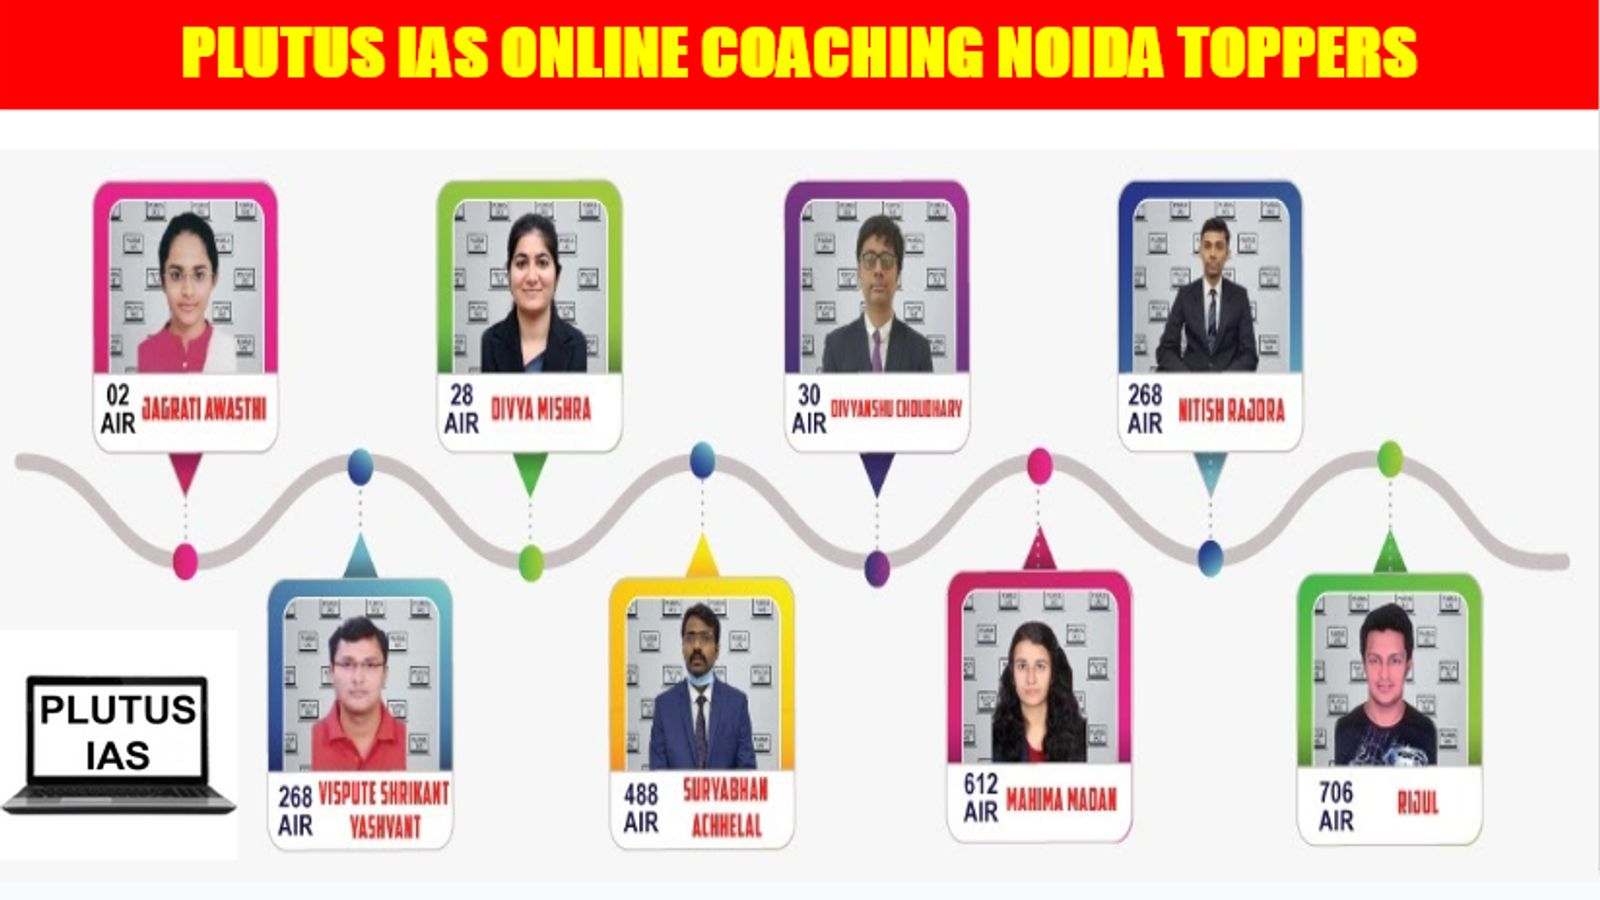 Plutus IAS Online Coaching Noida Toppers